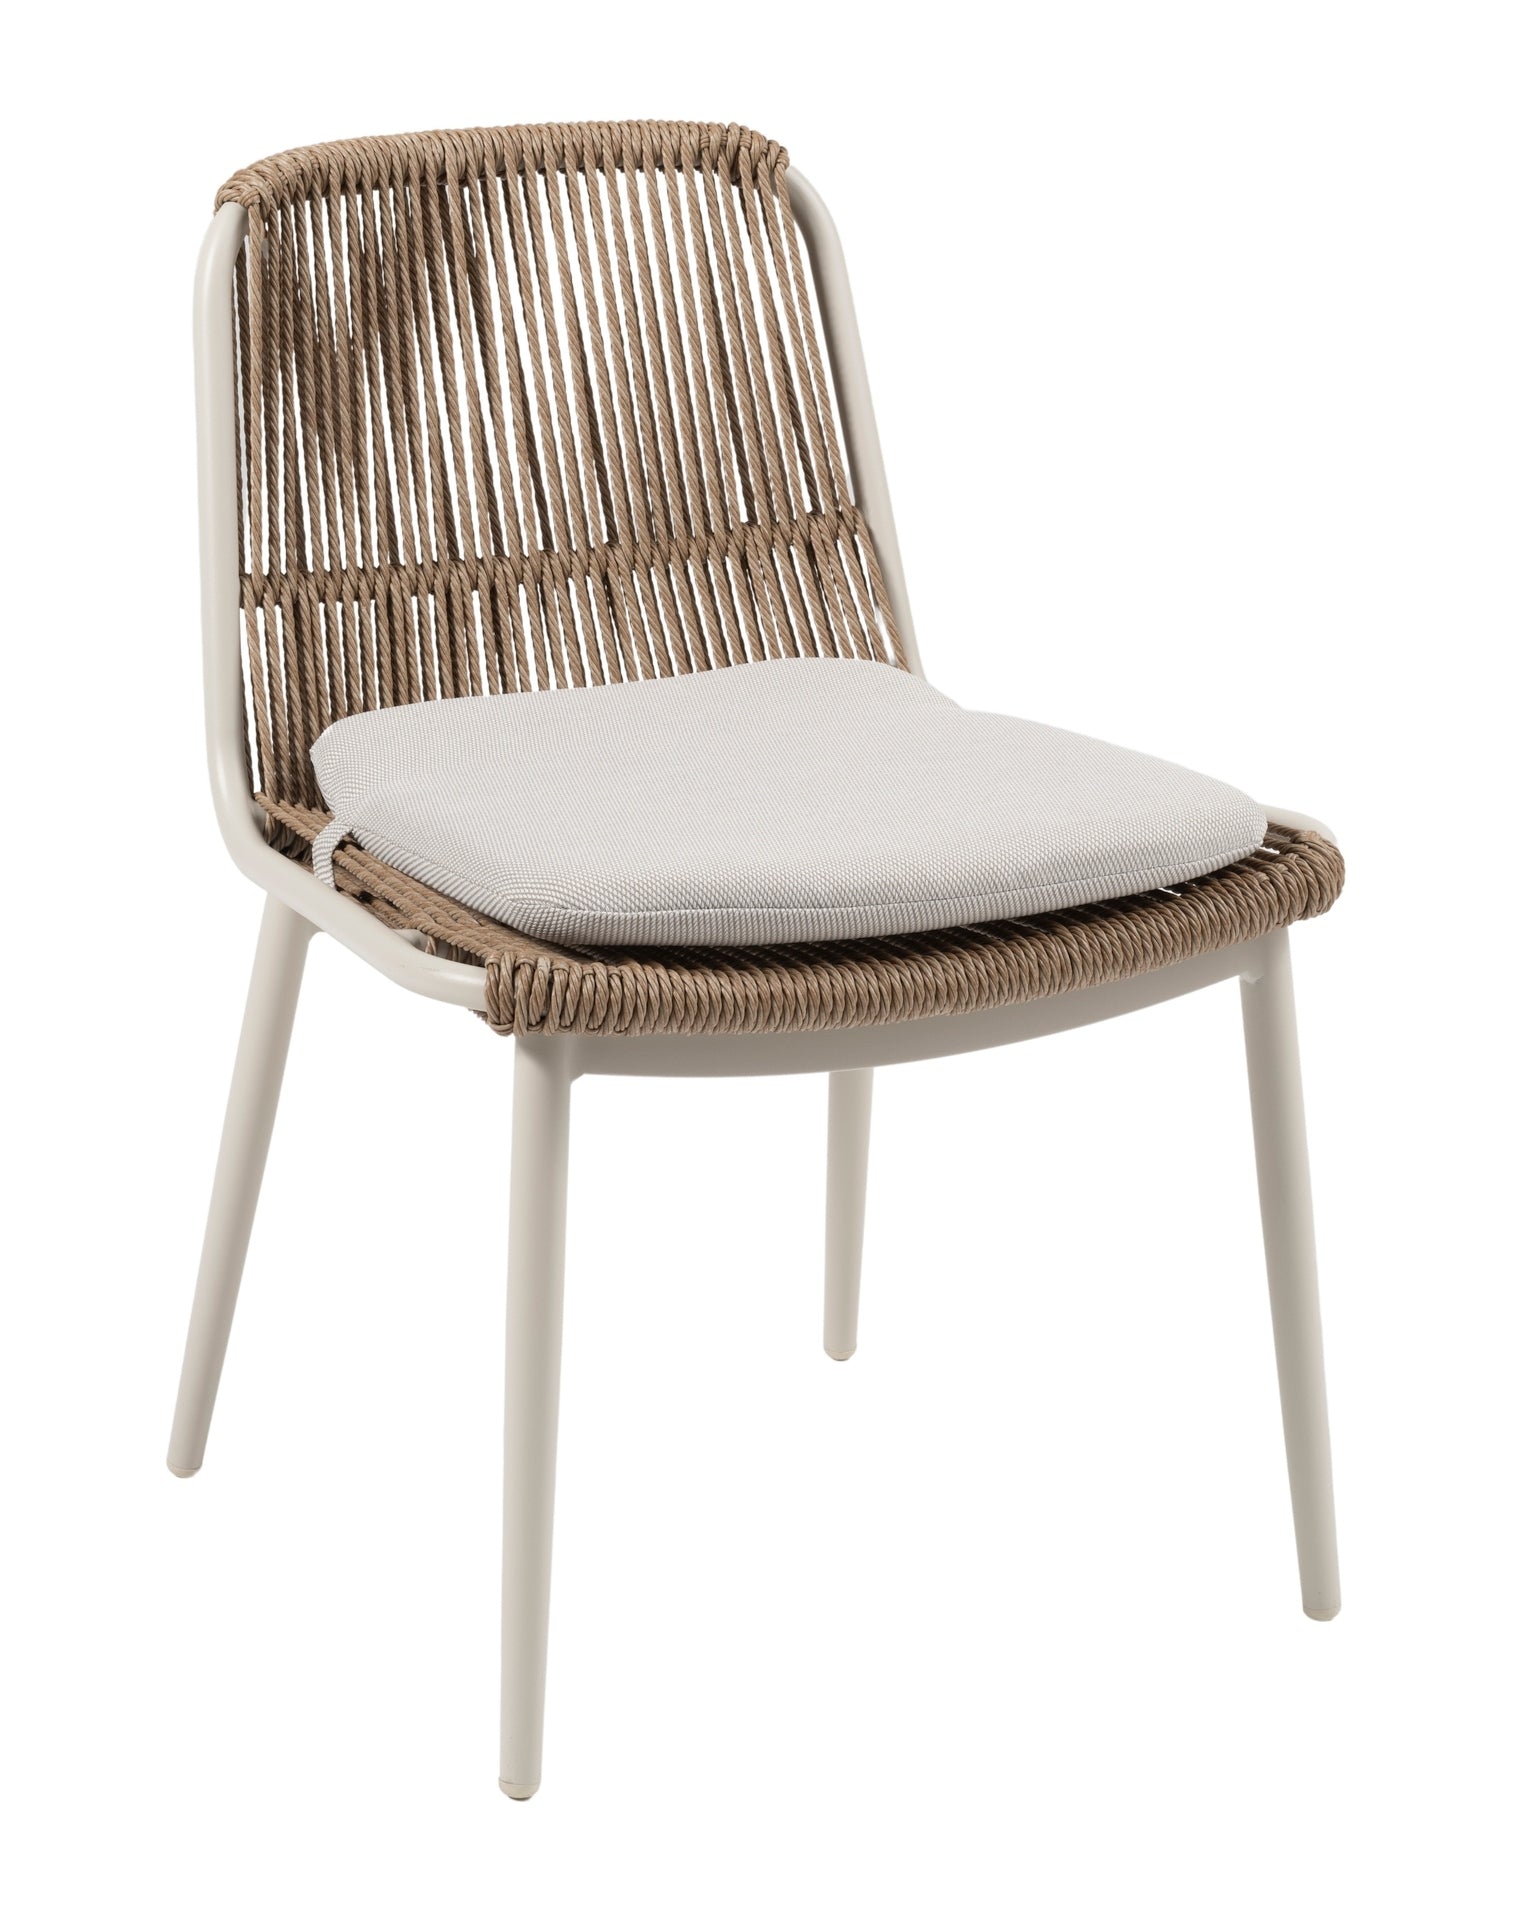 Minimalistischer 'Celeste' Gartenstuhl mit weißem Metallgestell und natürlichem, gedrehtem Kunststoffschnurgeflecht, ausgestattet mit einem bequemen Sitzkissen, erhältlich bei Gartenmoebelshop.at - Anischt mit weißem Hintergrund